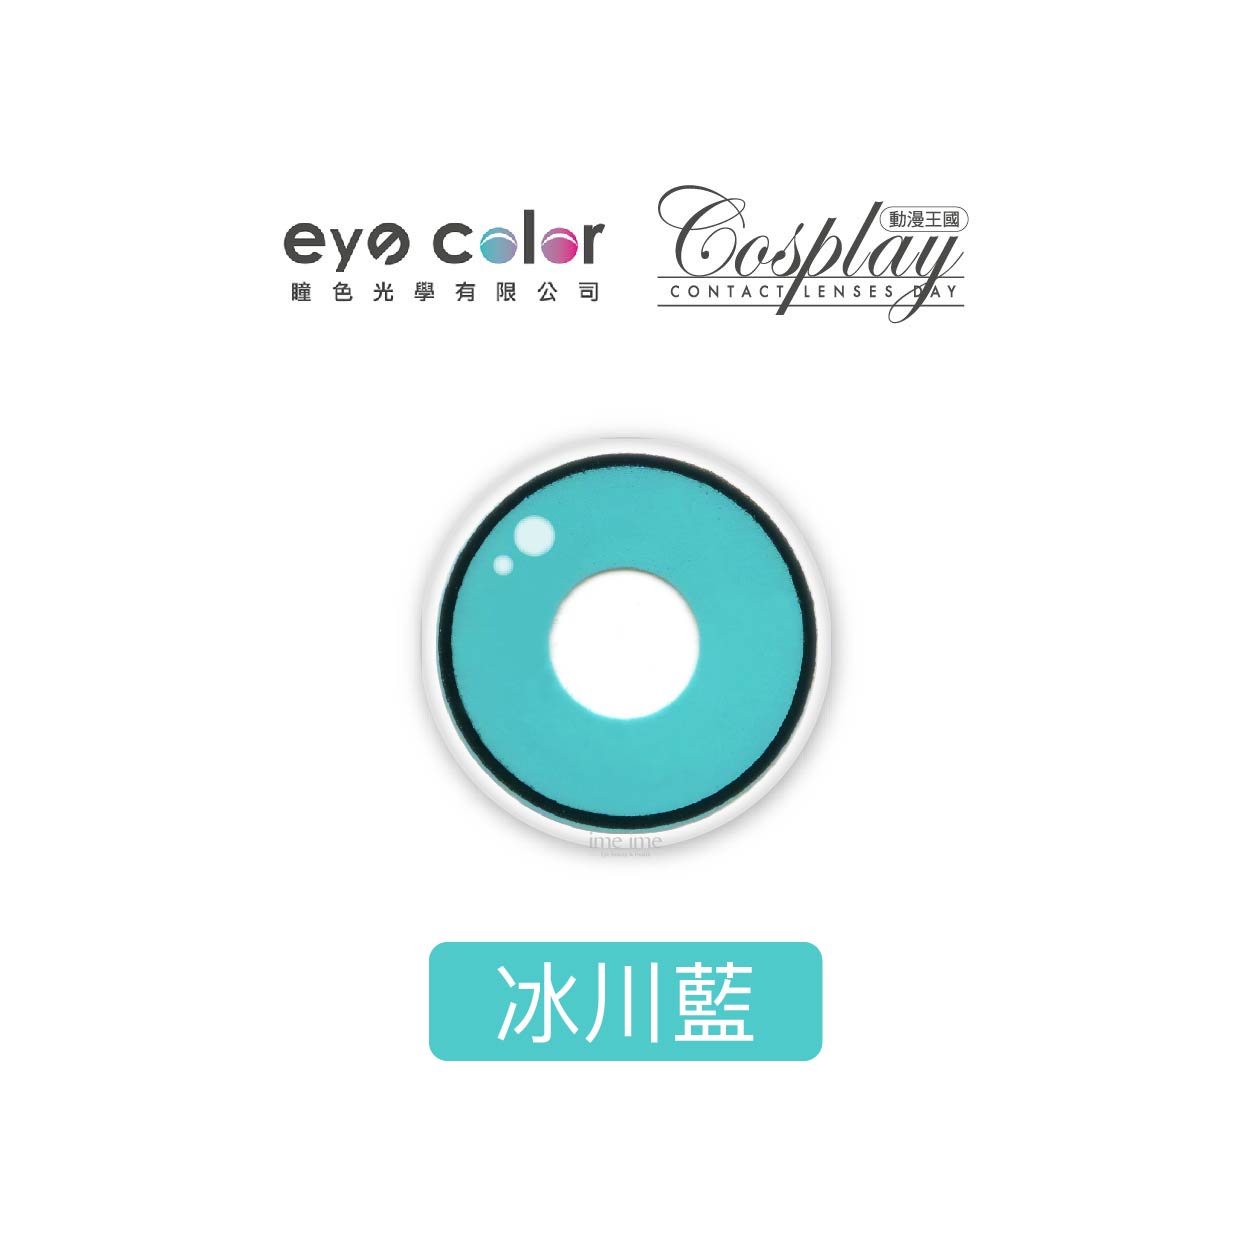 eyecolor Cosplay動漫王國彩色月拋1片裝-冰川藍